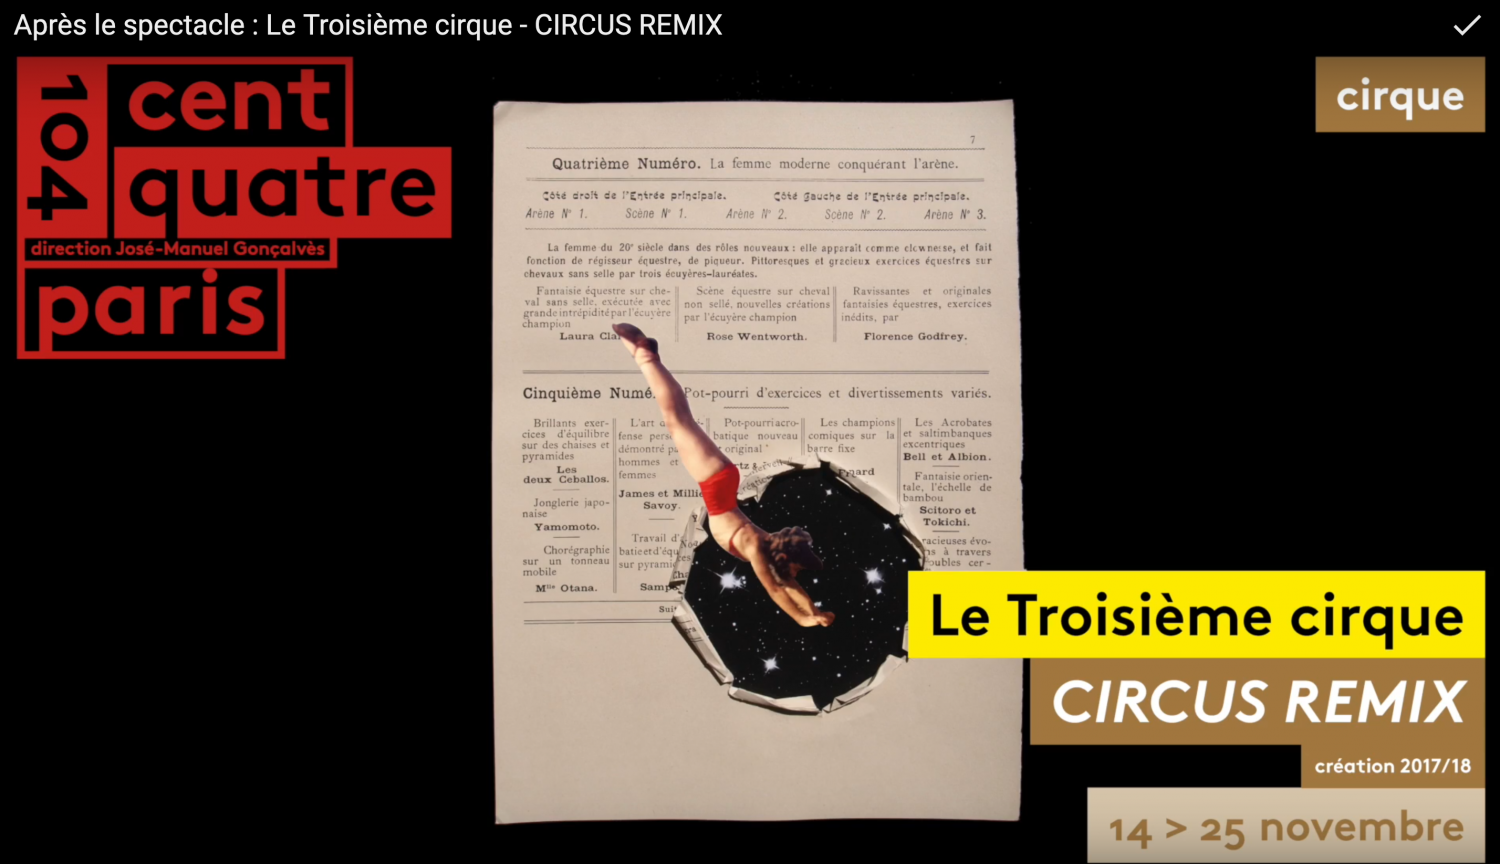 Circus Remix - Le Troisième Cirque